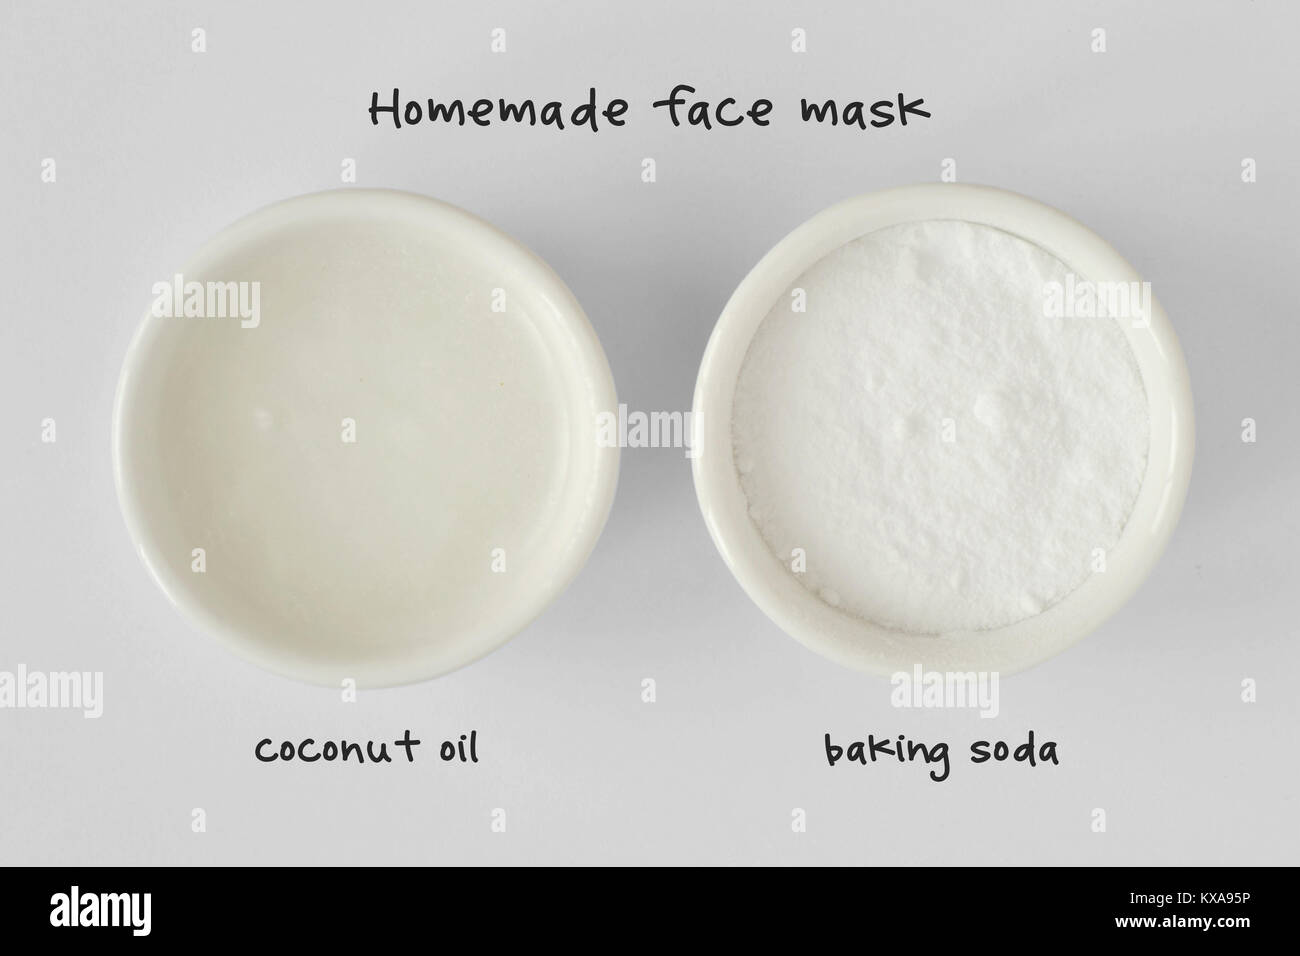 Hausgemachte Gesichtsmaske aus Kokosöl und Natron - Weißer Hintergrund  Stockfotografie - Alamy